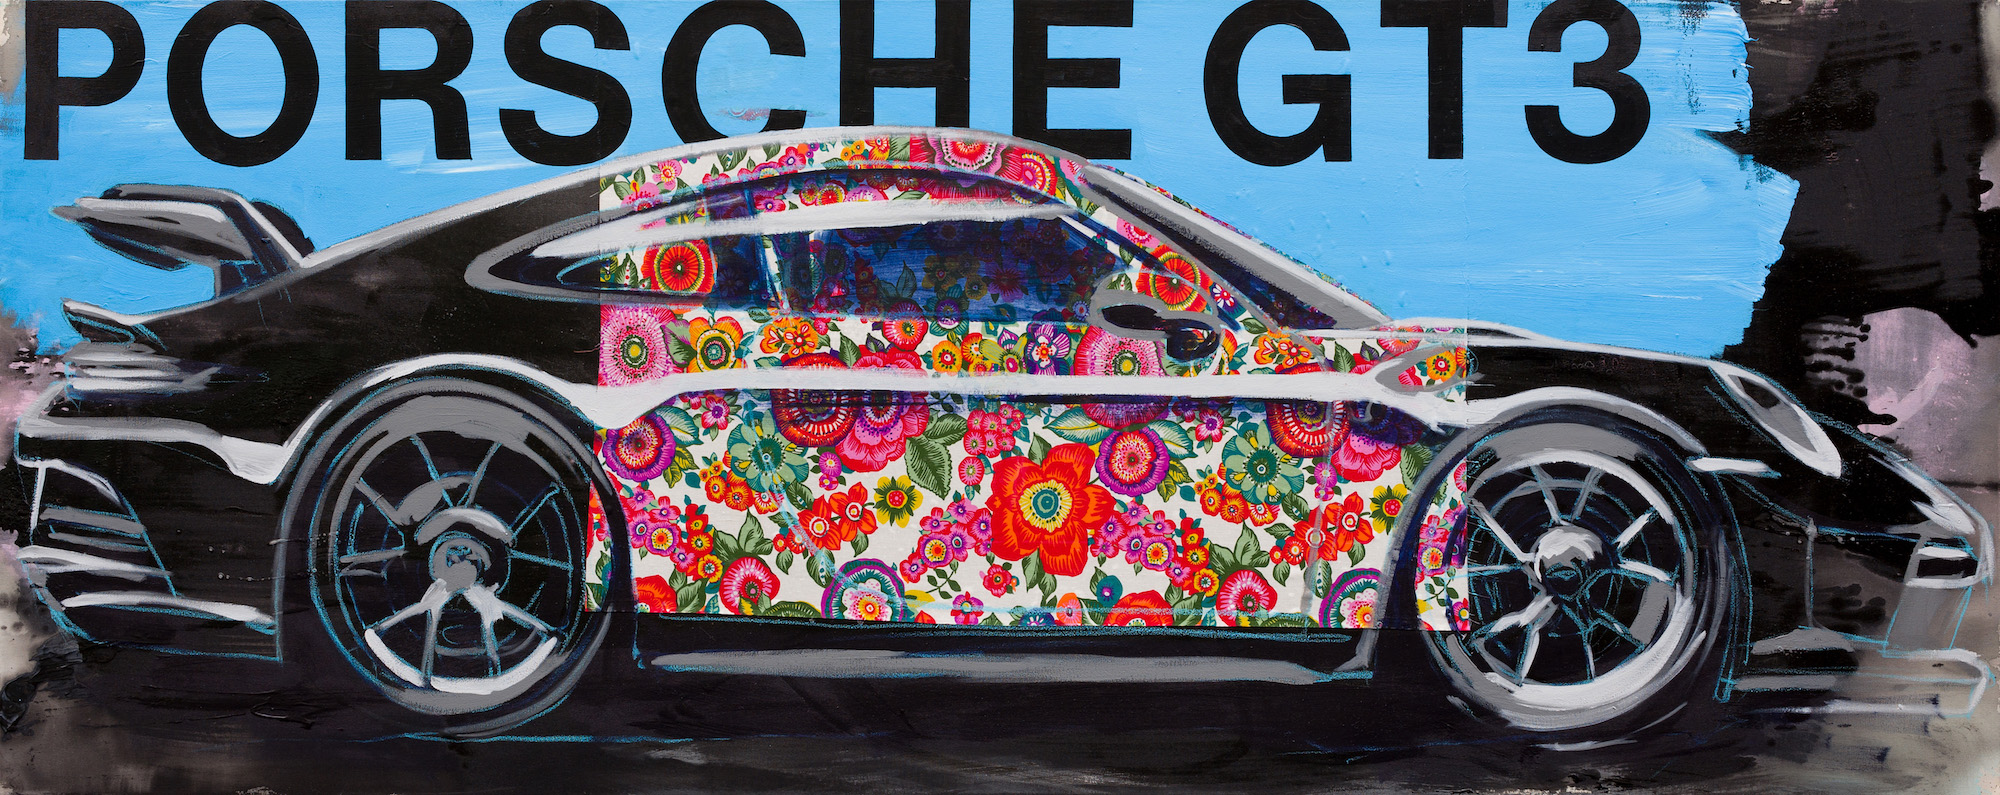 Bild "Porsche GT3" (2022) (Unikat) by Stephan Geisler